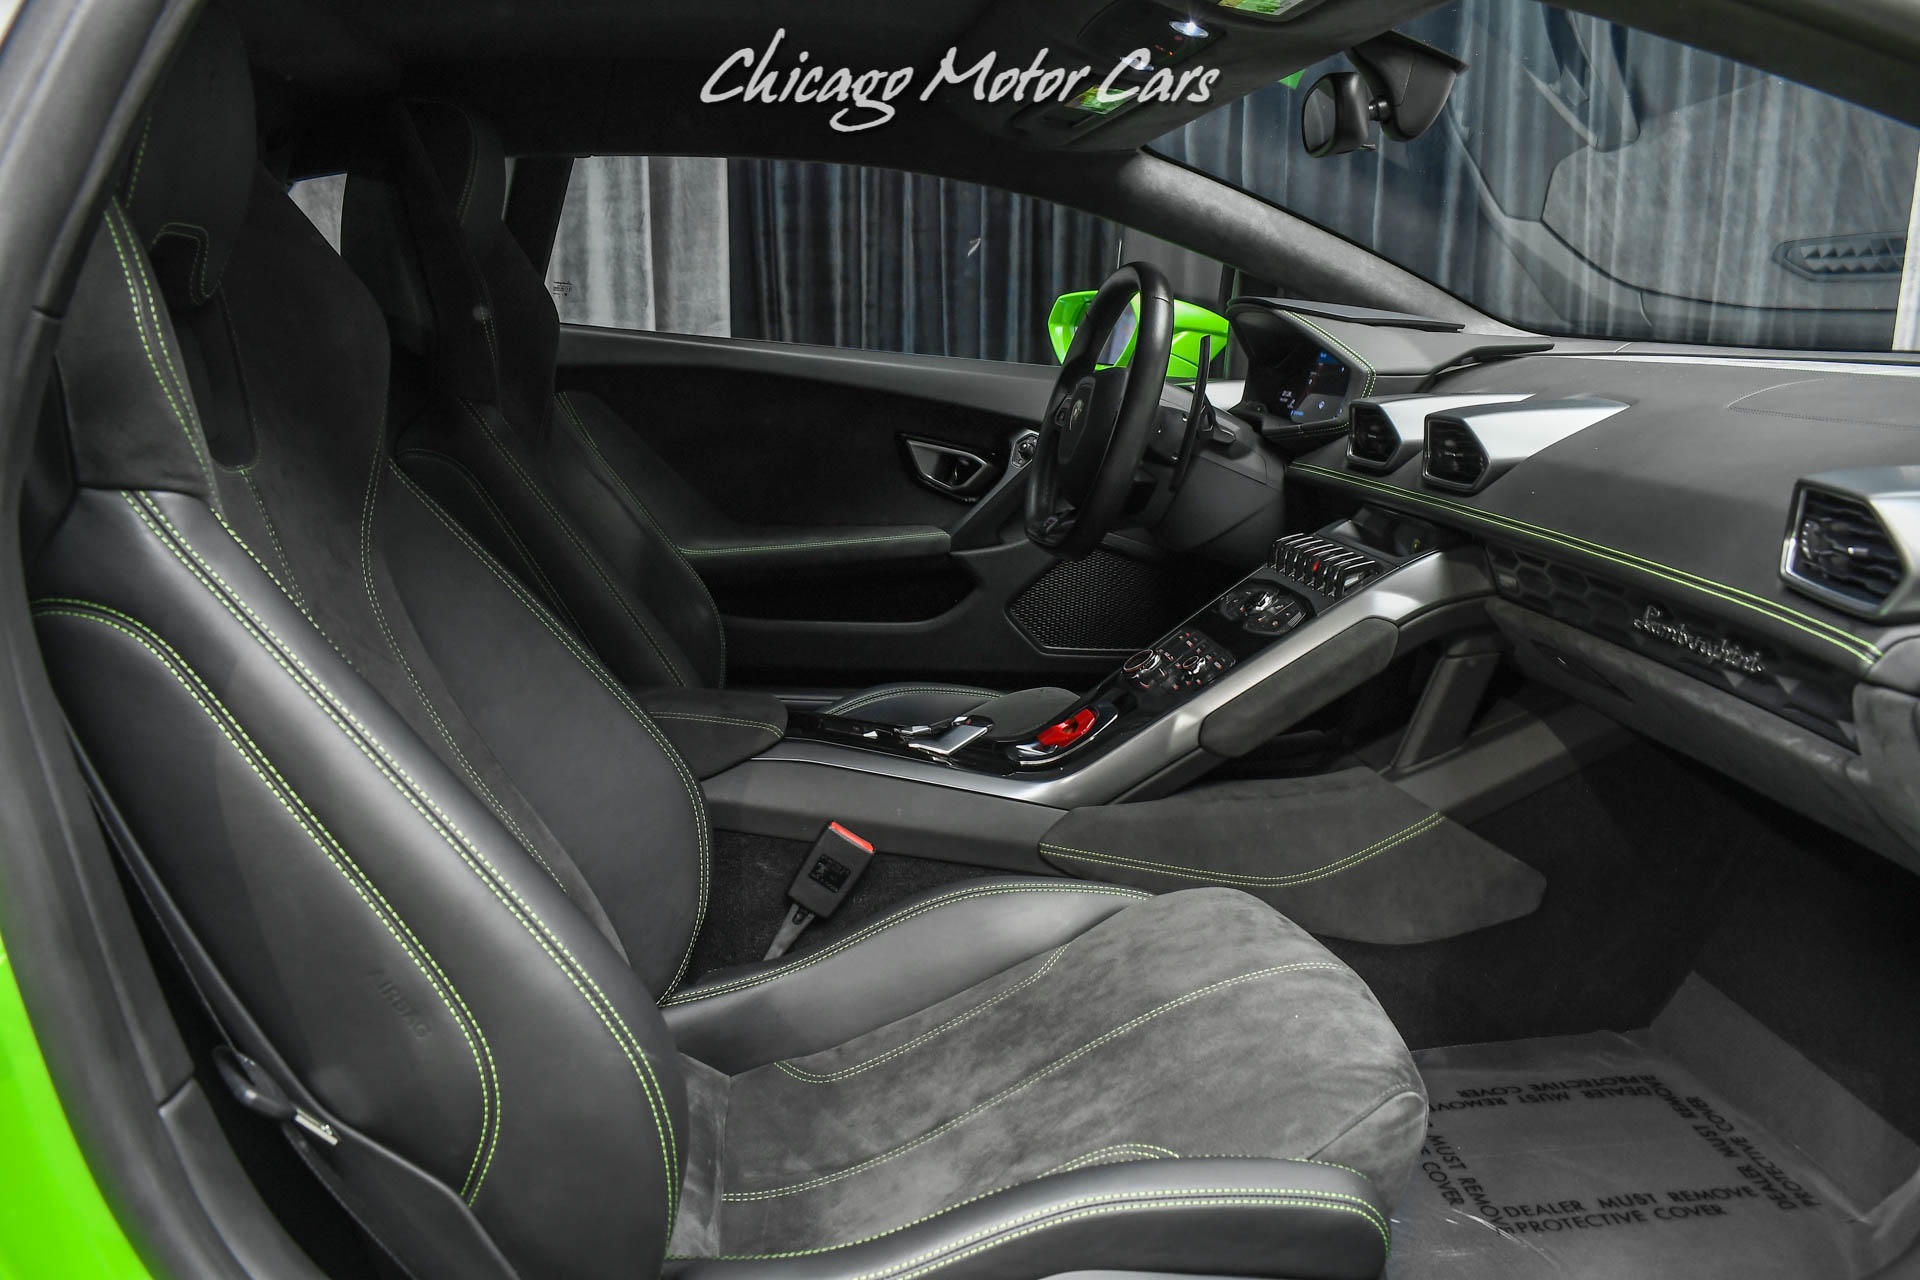 Used-2015-Lamborghini-Huracan-LP610-4-Coupe-LOW-Miles-Verde-Mantis-HOT-Spec-VORSTEINER-Upgrades